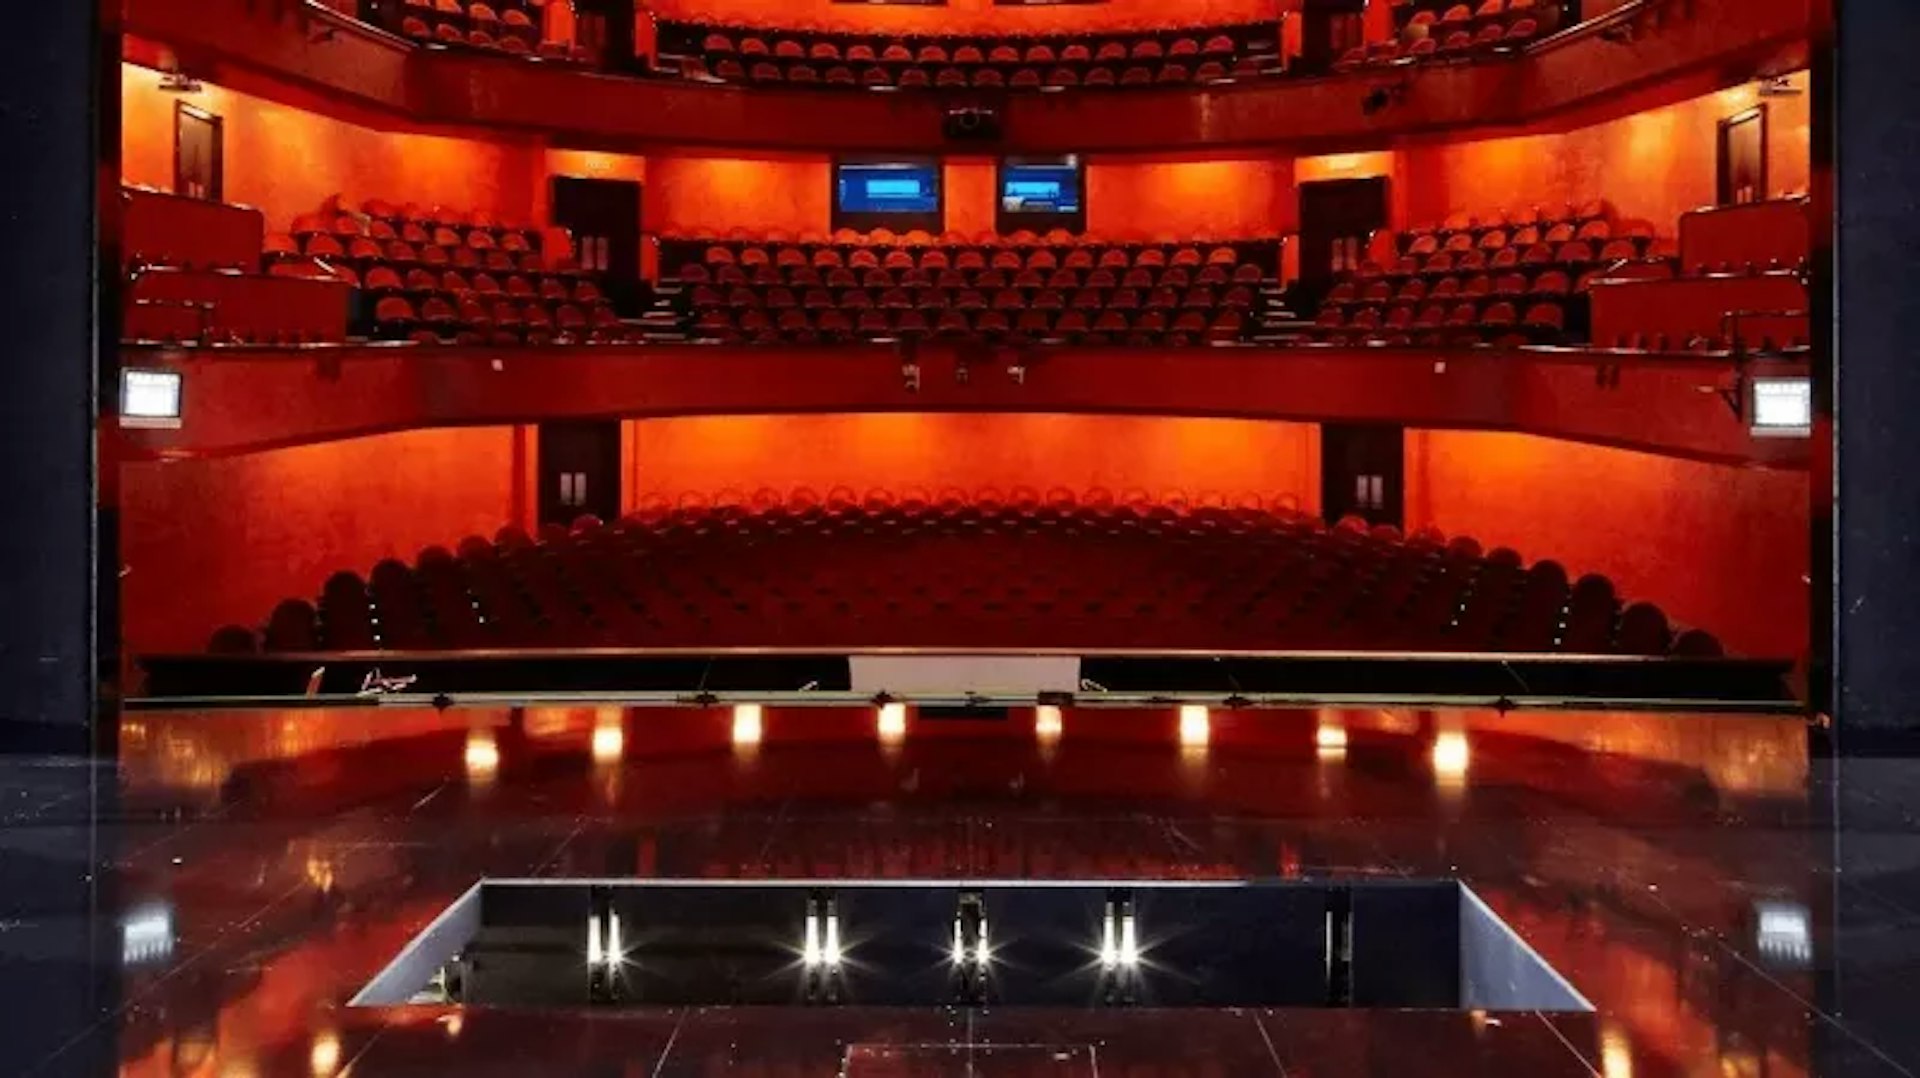 Vue depuis la scène d'un théâtre avec des sièges rouges